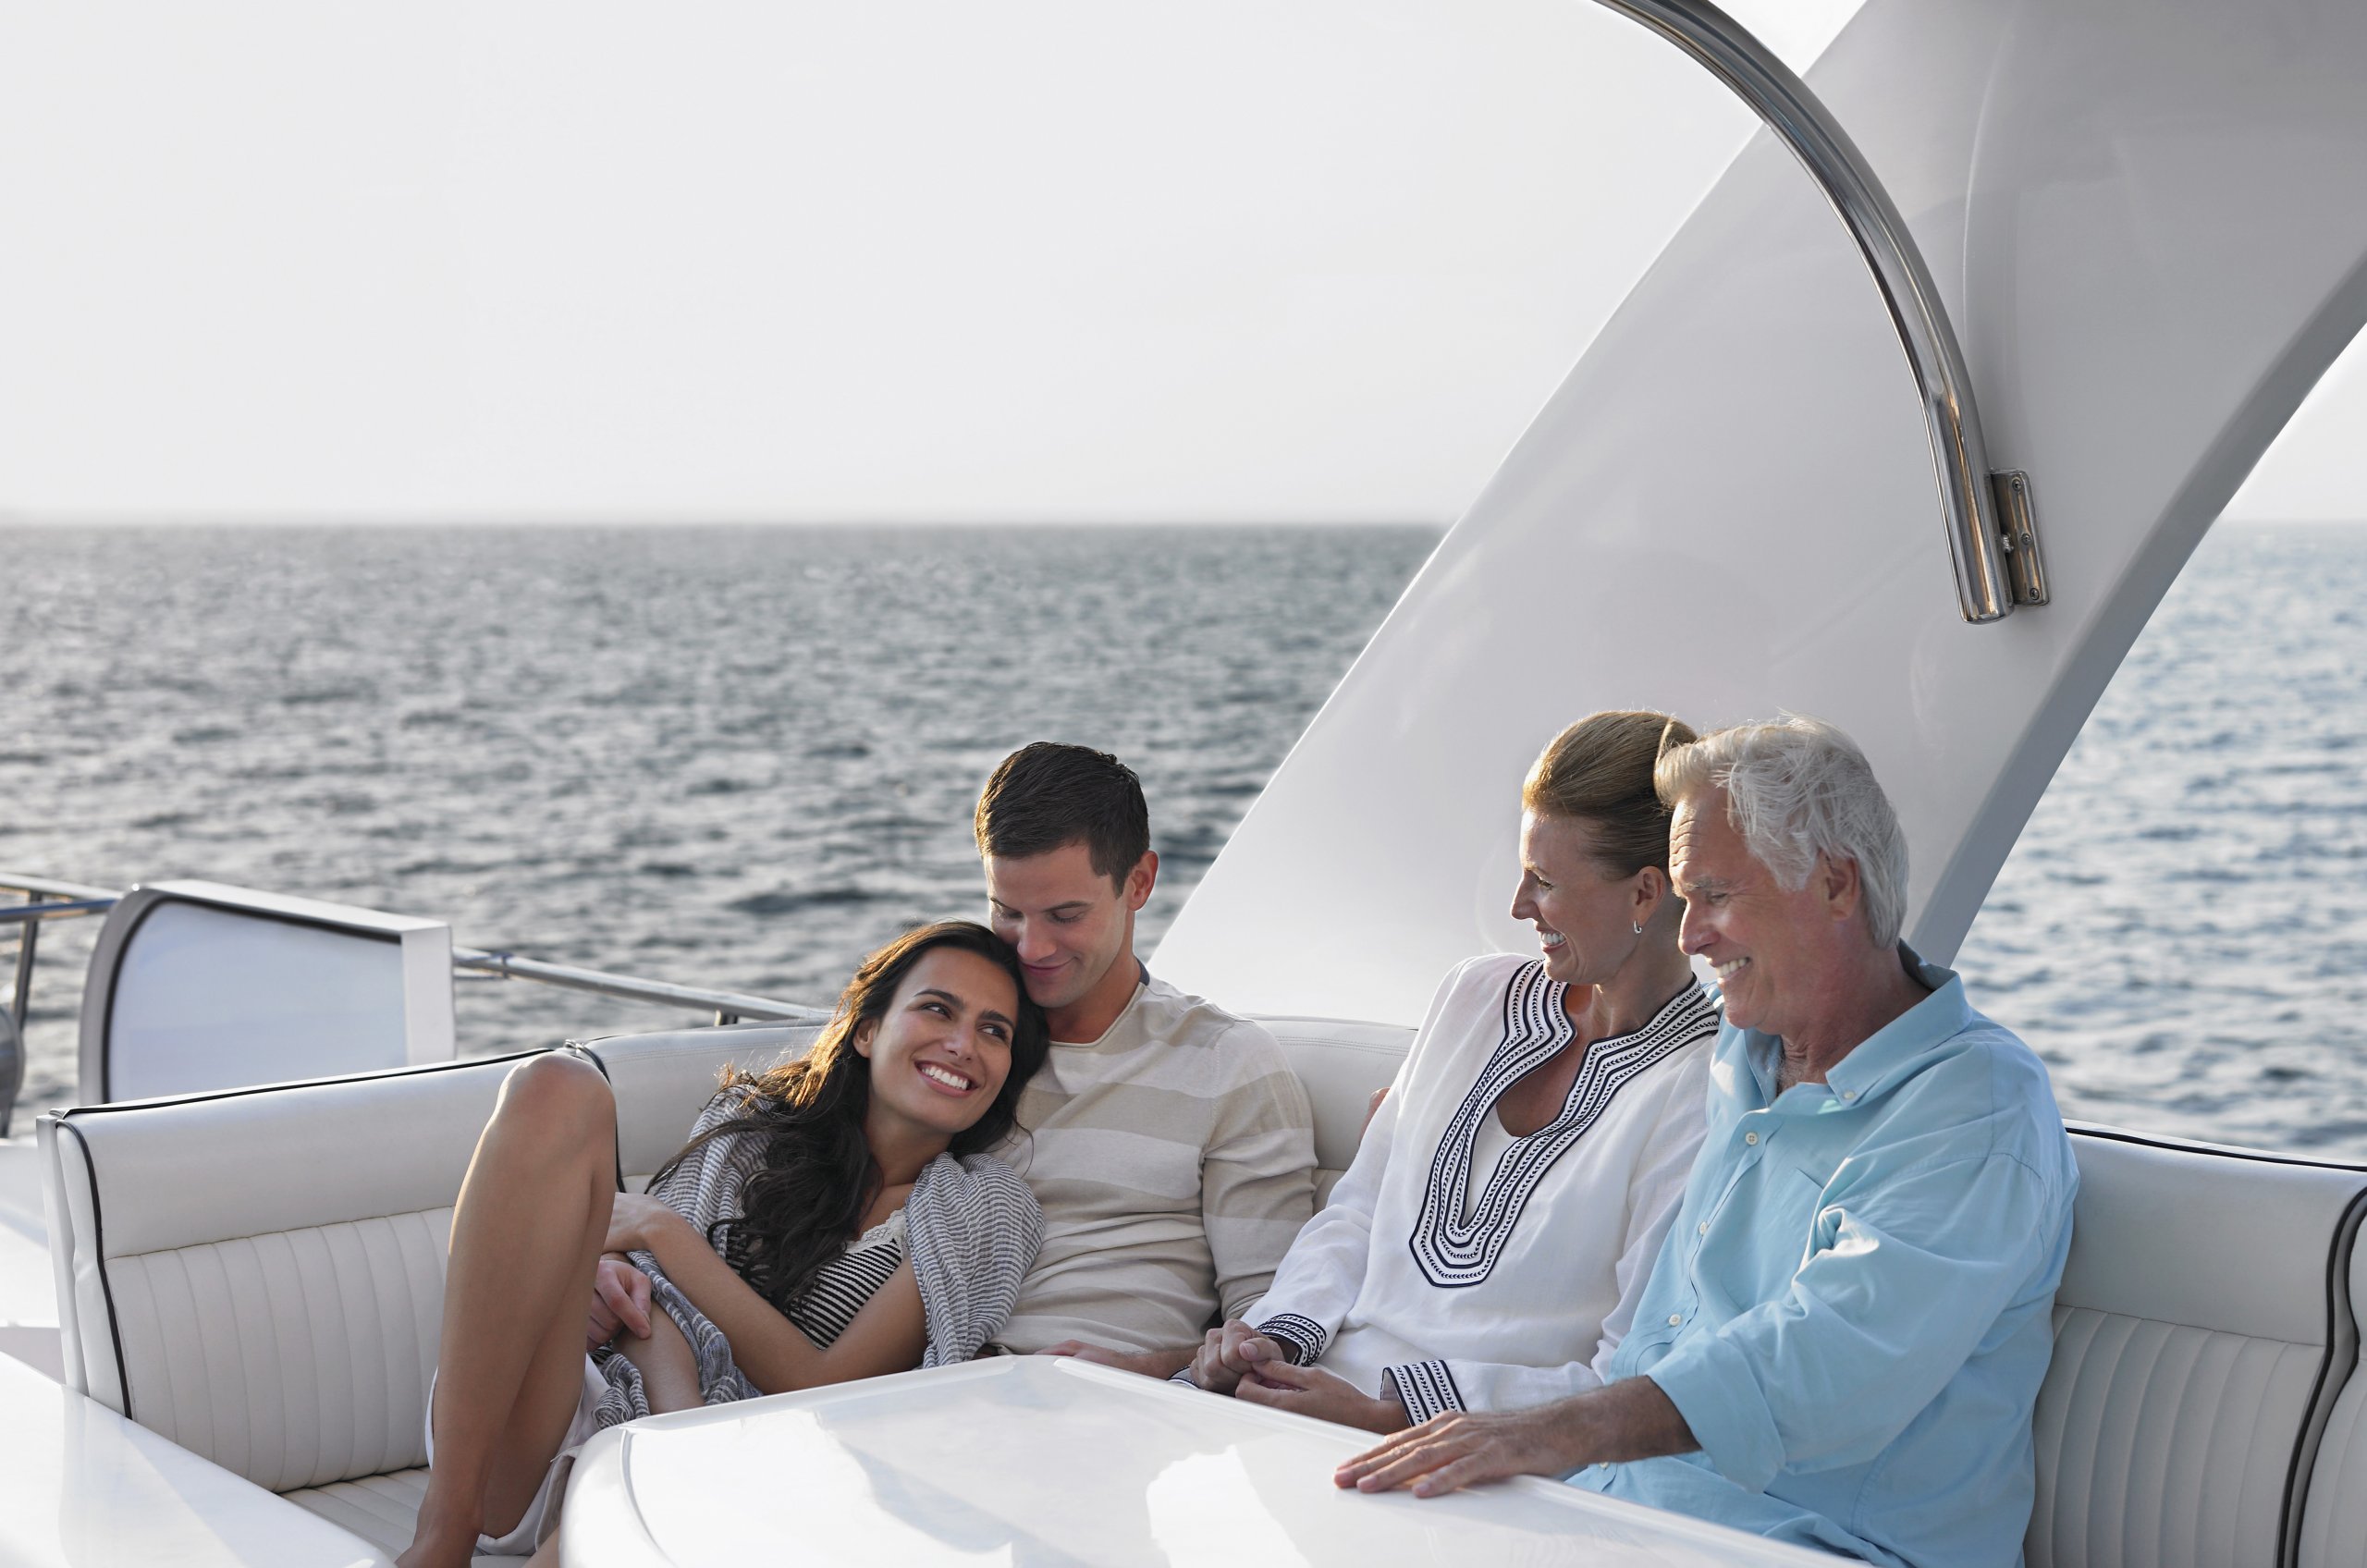 Родственники за границей есть. Семья на яхте. Женщина на яхте. Яхта фото. Фотосессия на яхте семья.